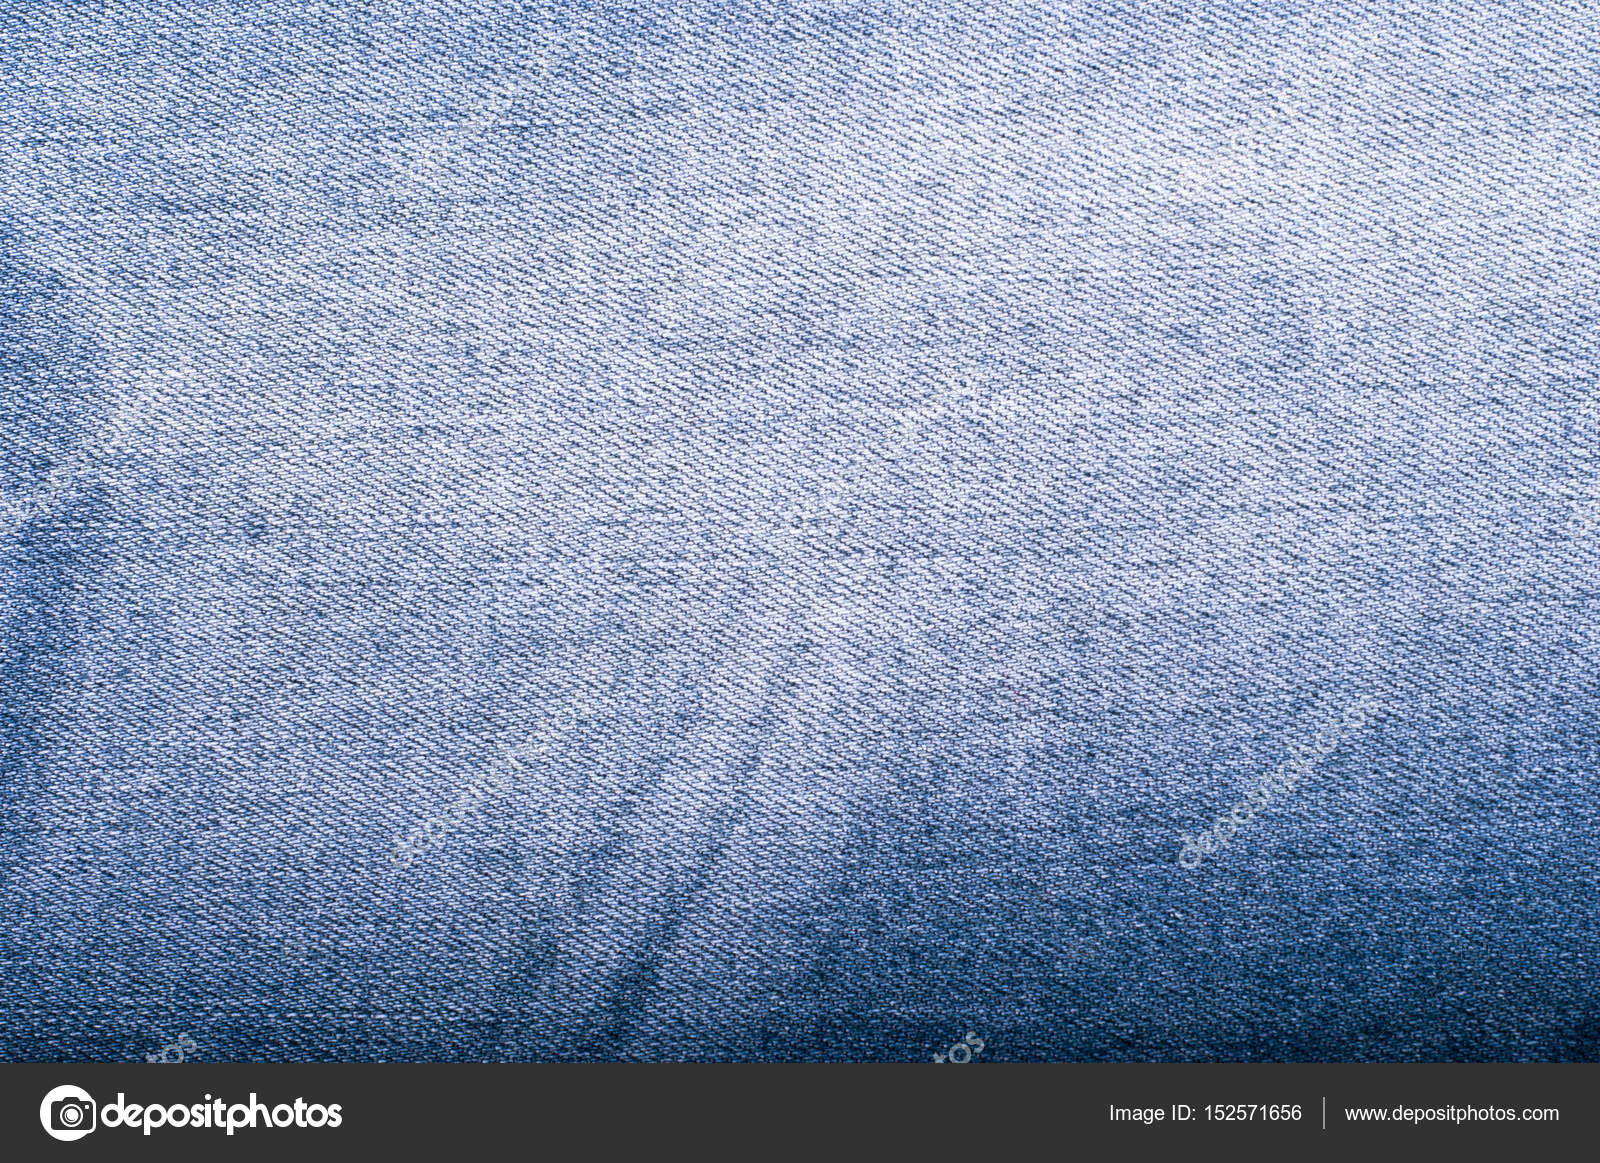 Синий джинсовый фон. Джинсы — Стоковое фото © artursfoto1 #152571656 Джинсовый Фон